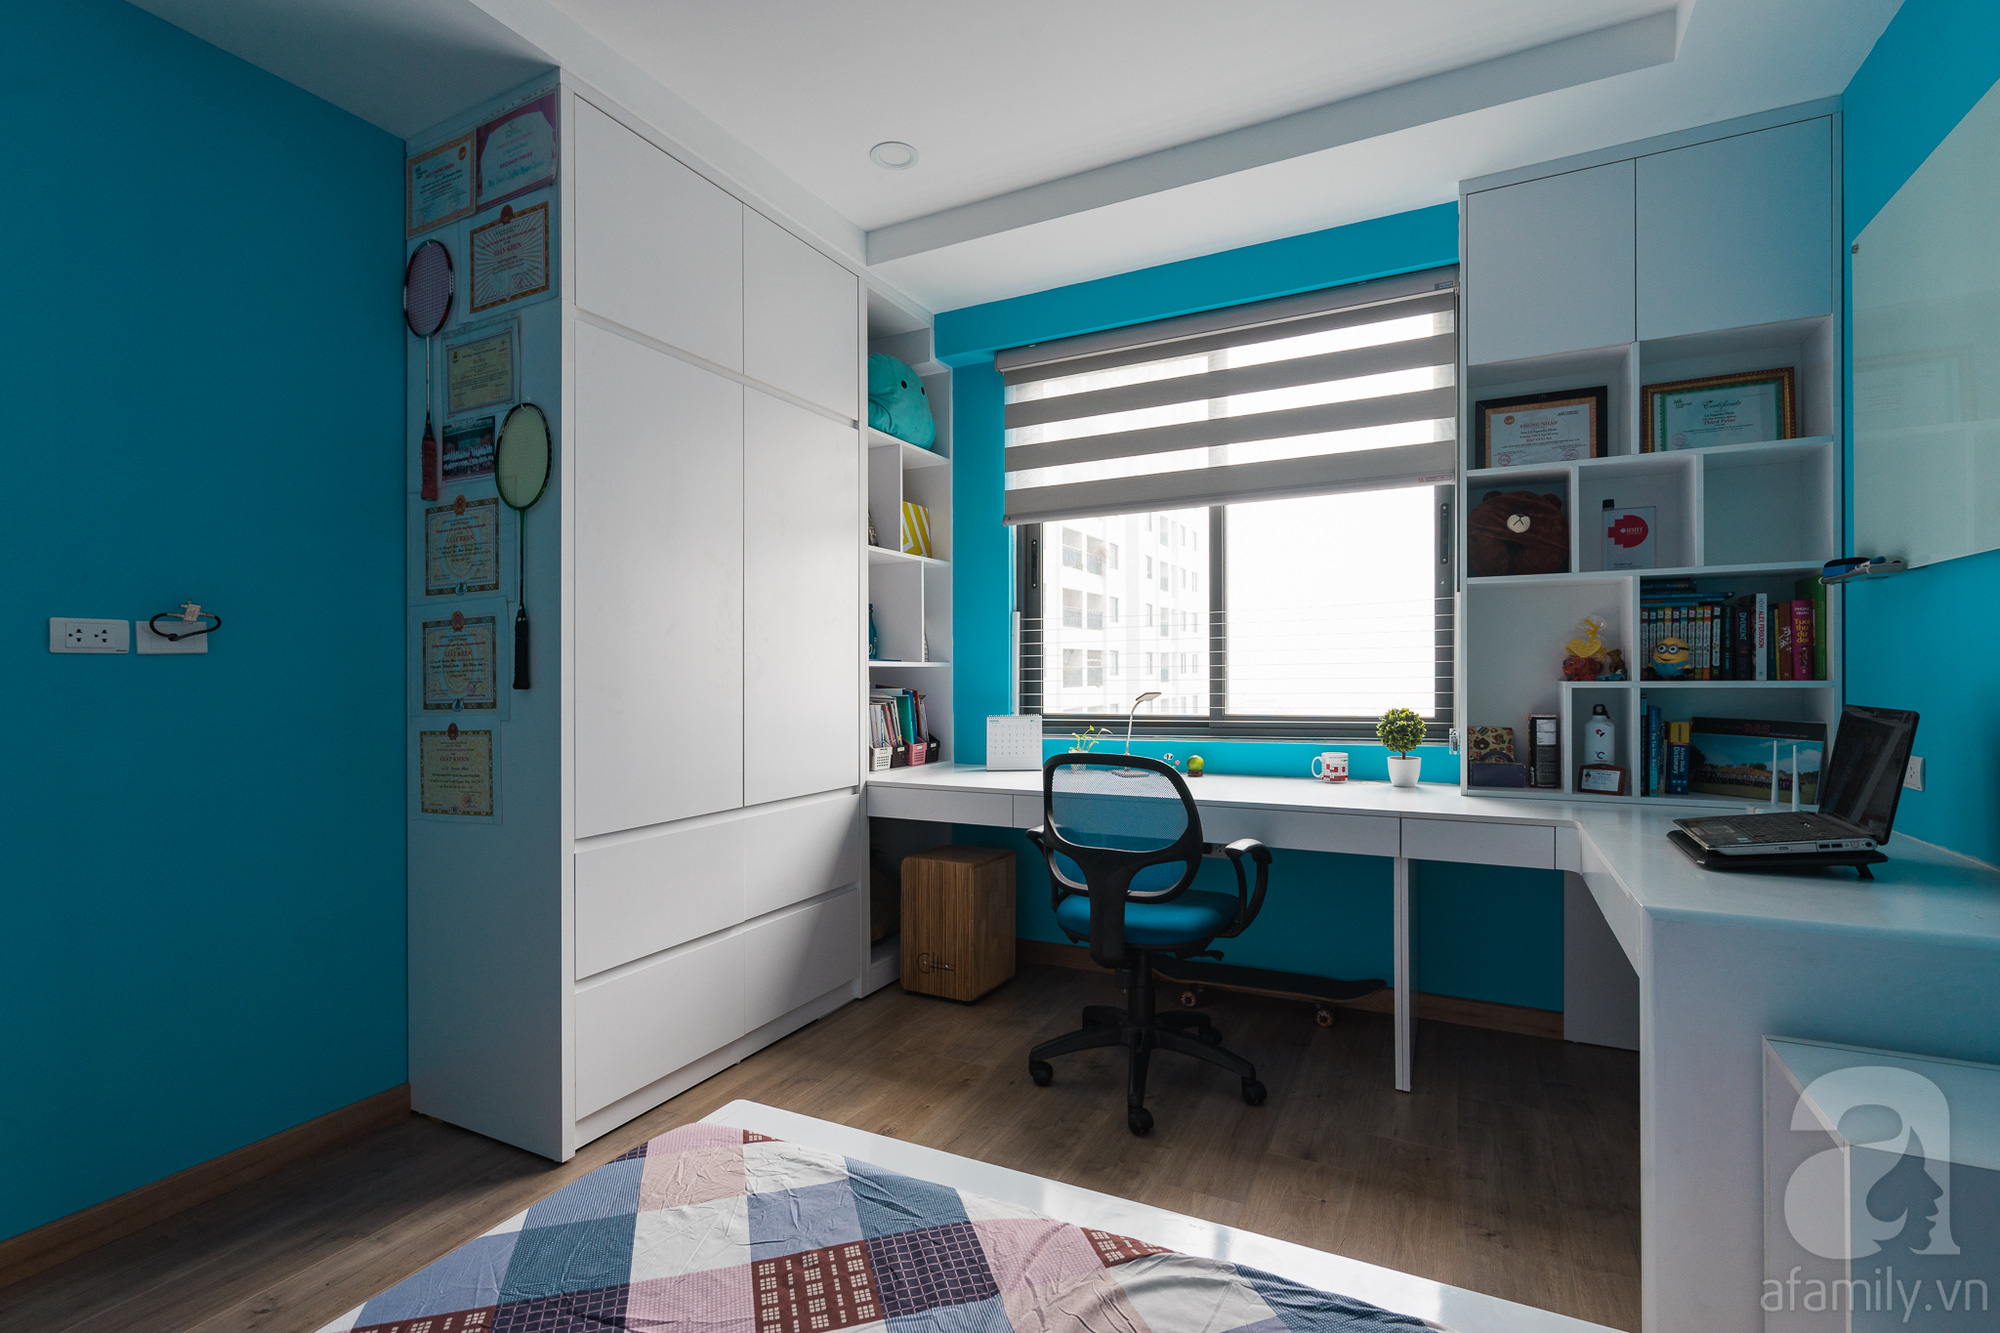 Tư vấn thiết kế căn hộ 110m2 với 3 phòng ngủ tiện nghi ở chung cư Ecolife, Tây Hồ với chi phí hoàn thiện nội thất 290 triệu - Ảnh 24.